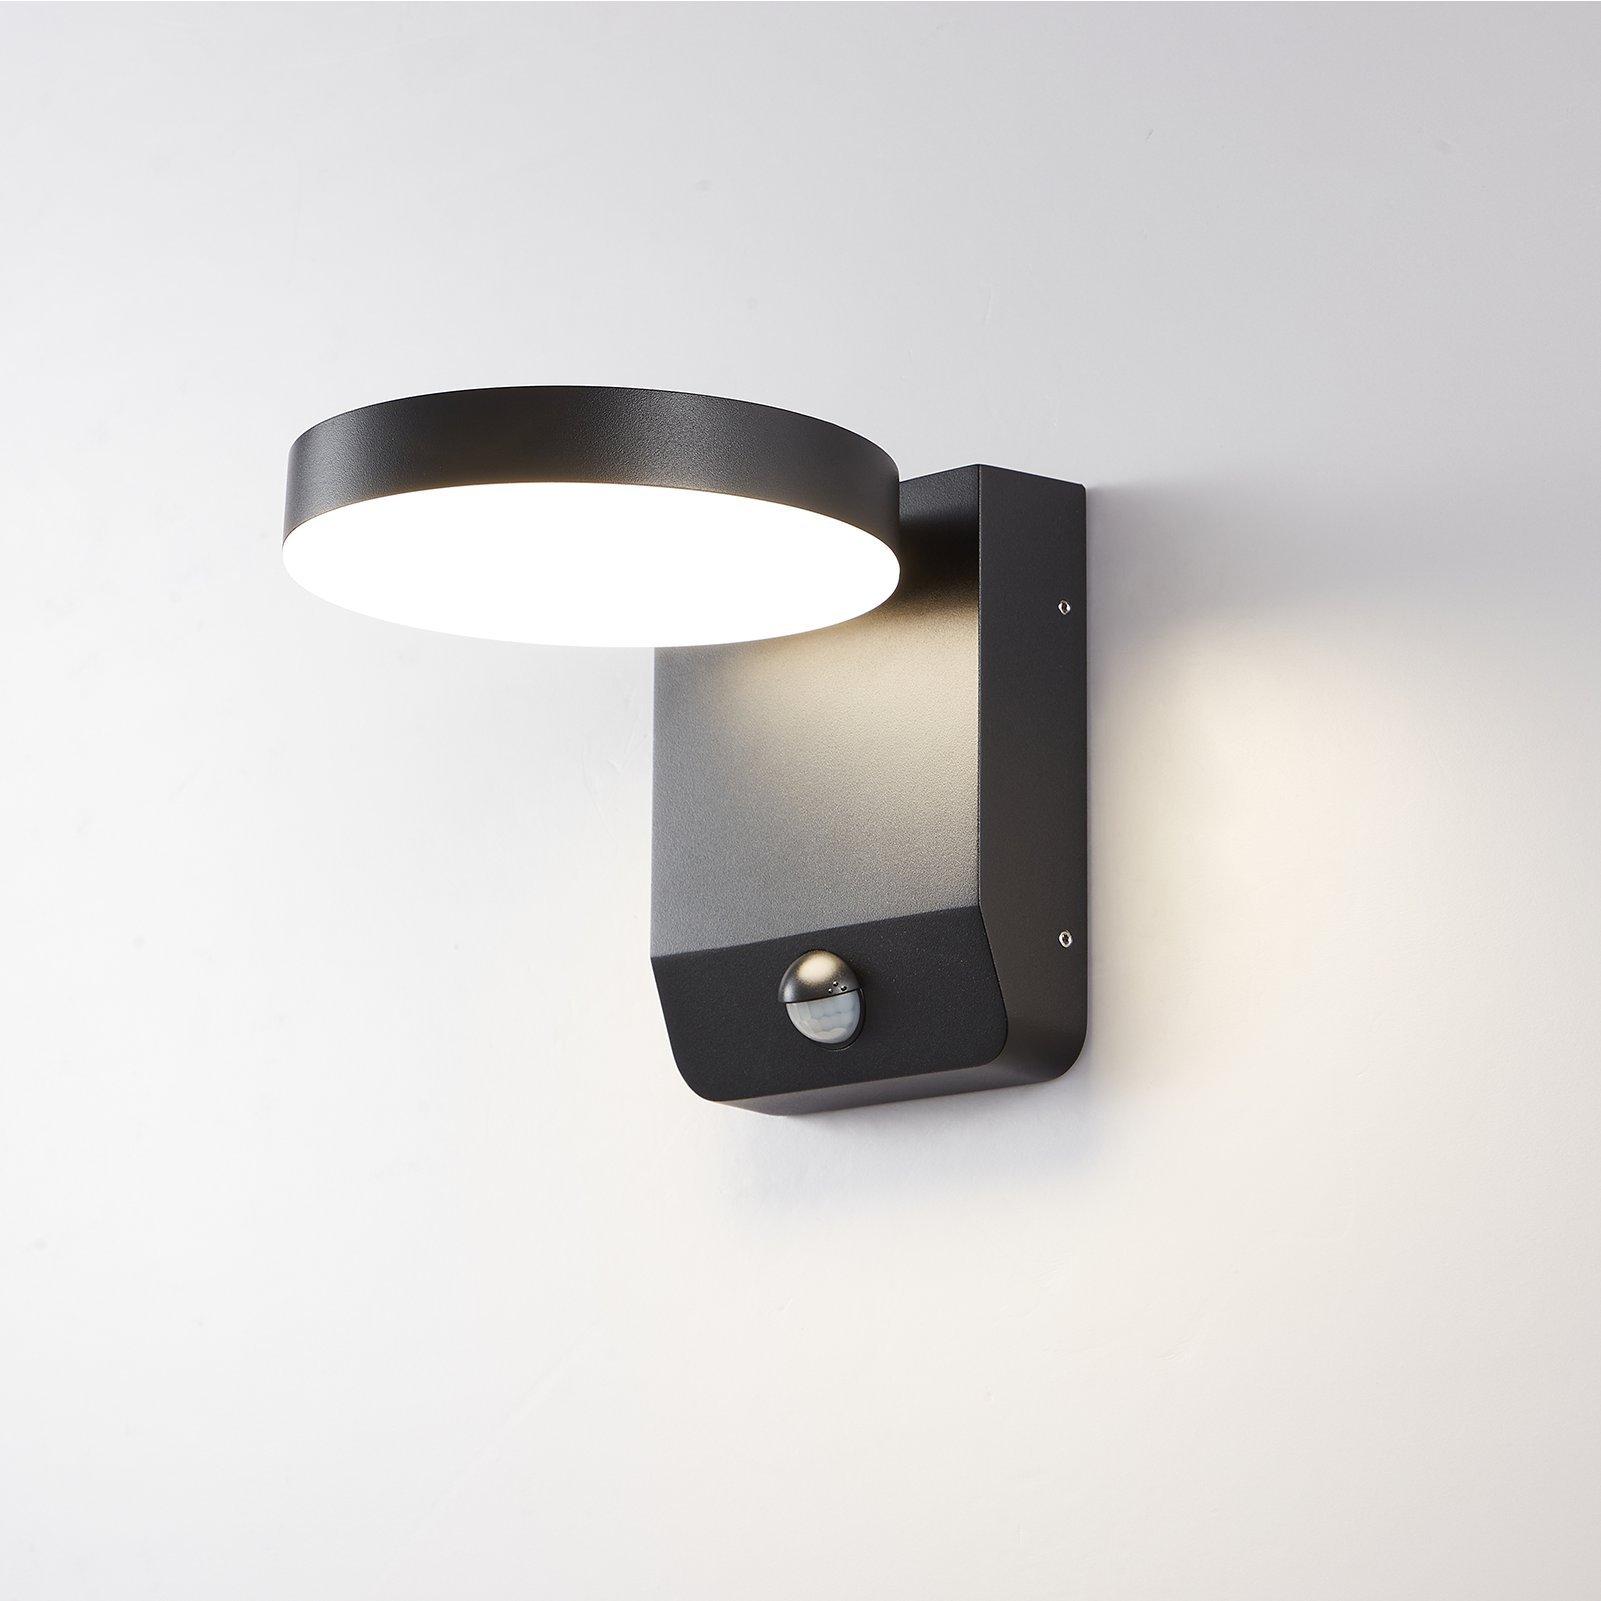 Matt Black Modern Round LED Outdoor Wall Light Mains Powered, Weatherproof, with PIR Sensor